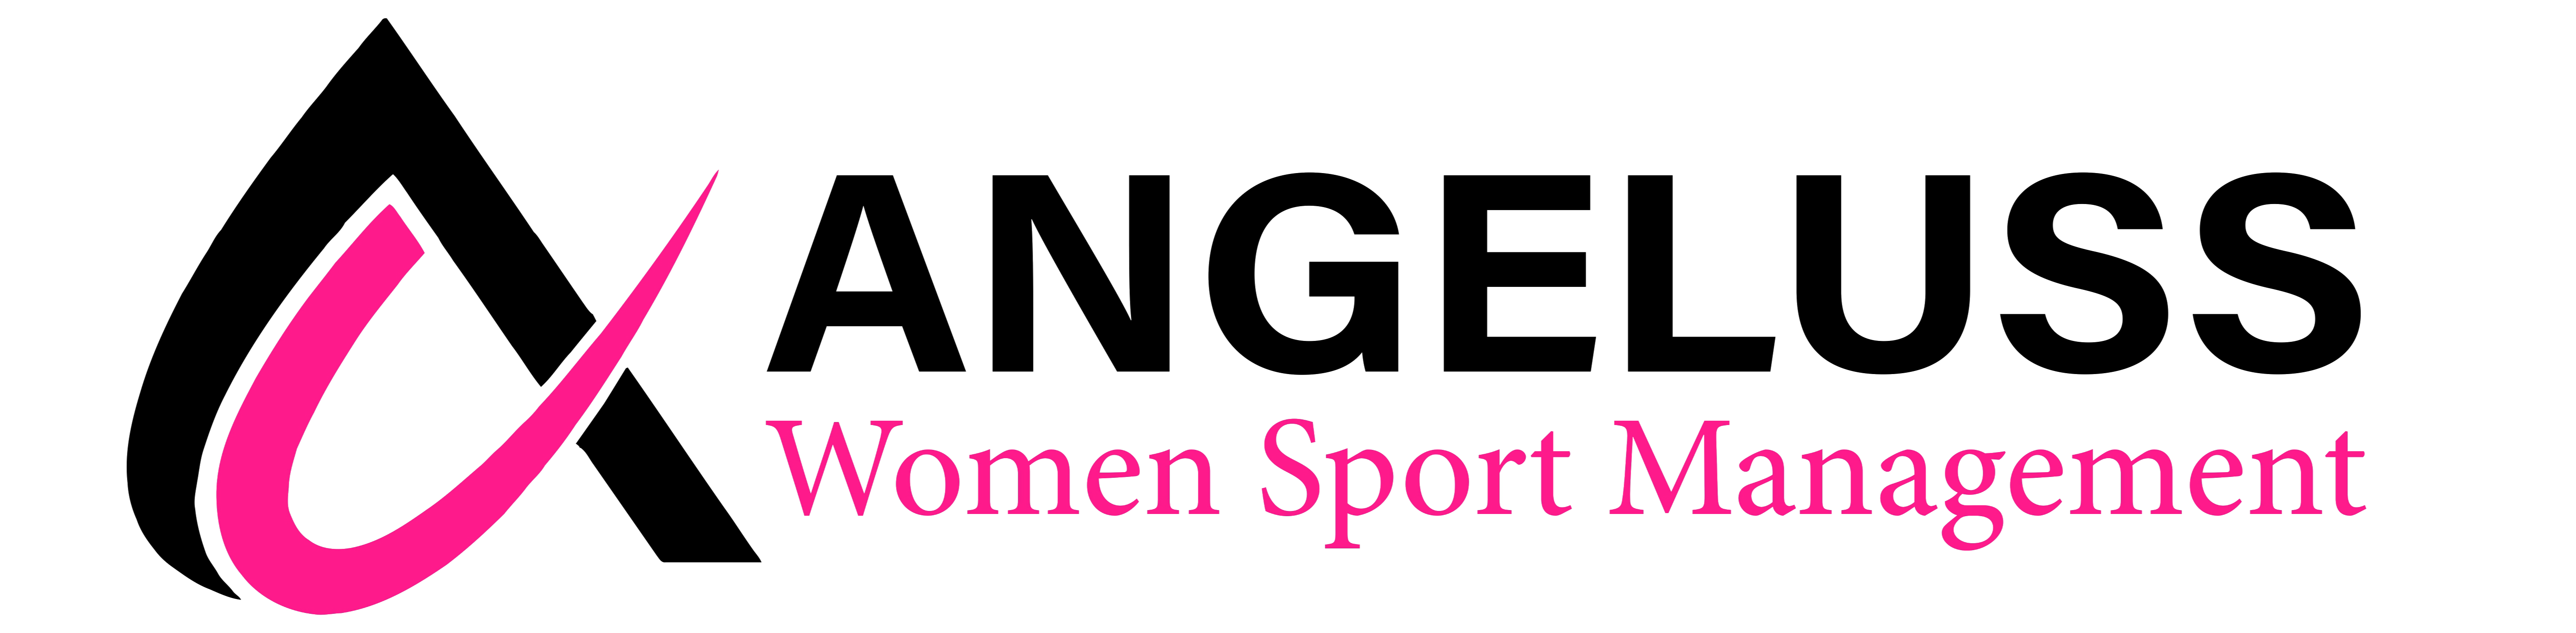 ANGELUSS | Women Sport Management